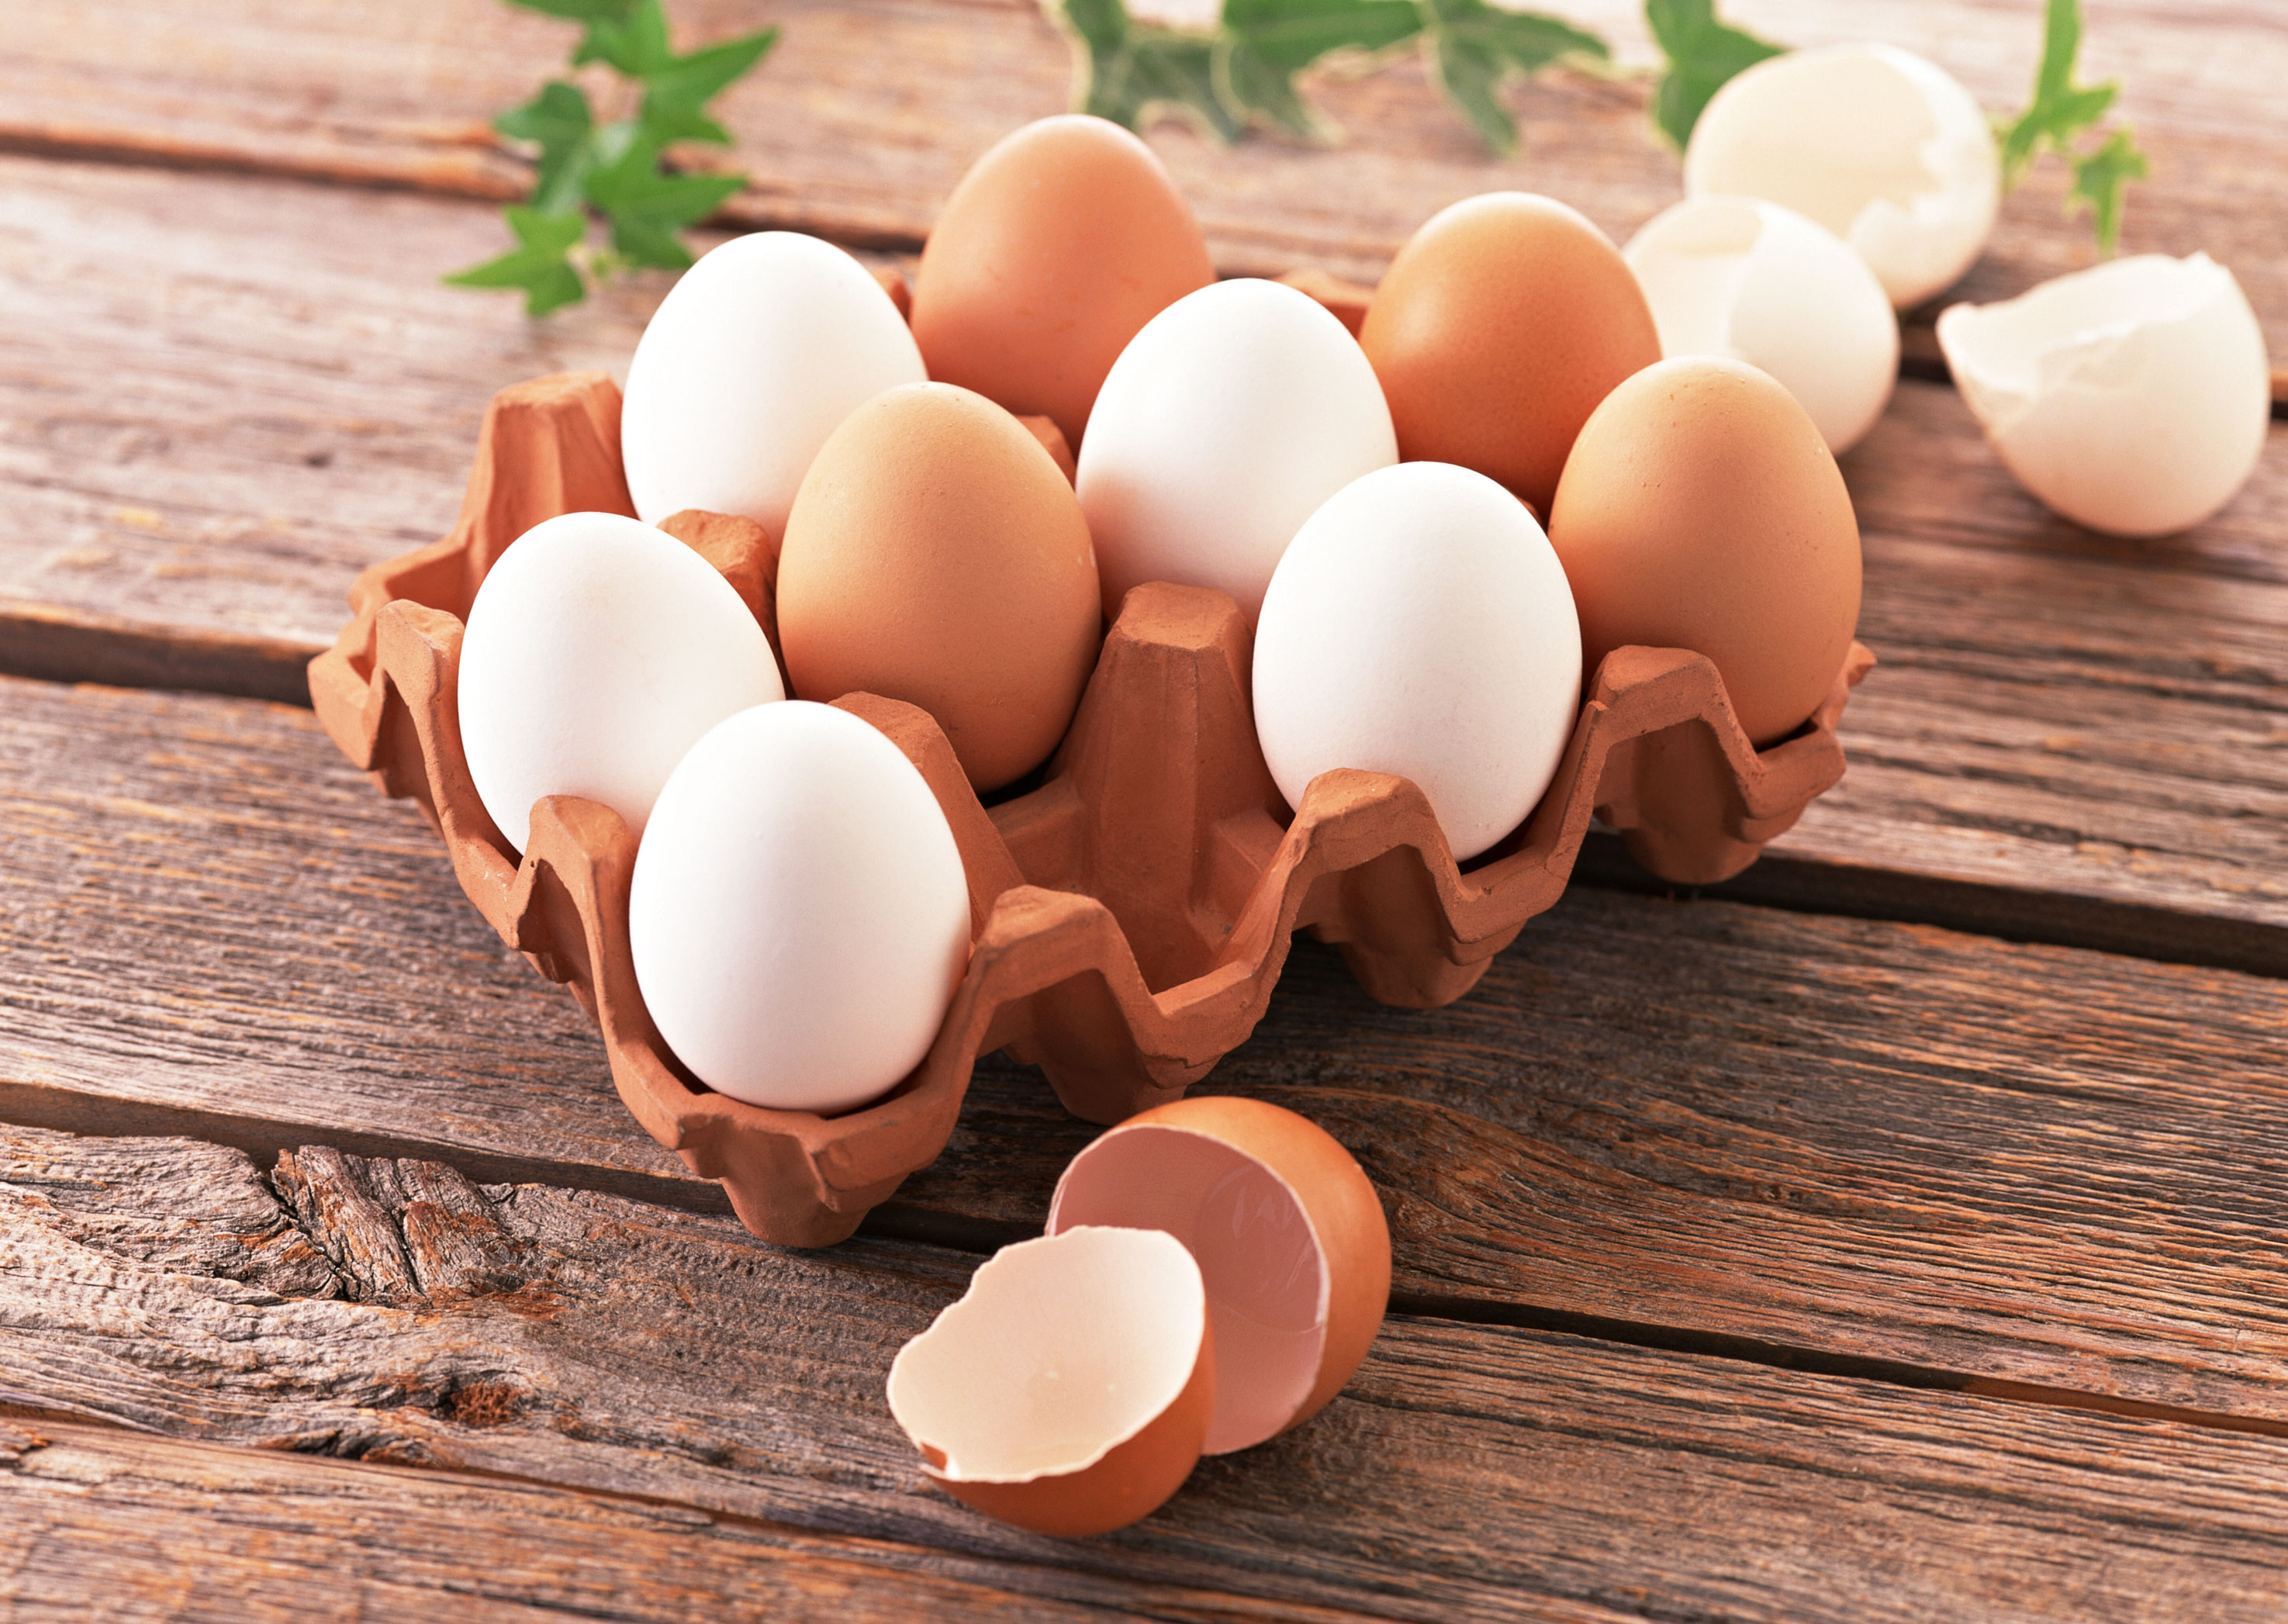 نتیجه تصویری برای تخم مرغ